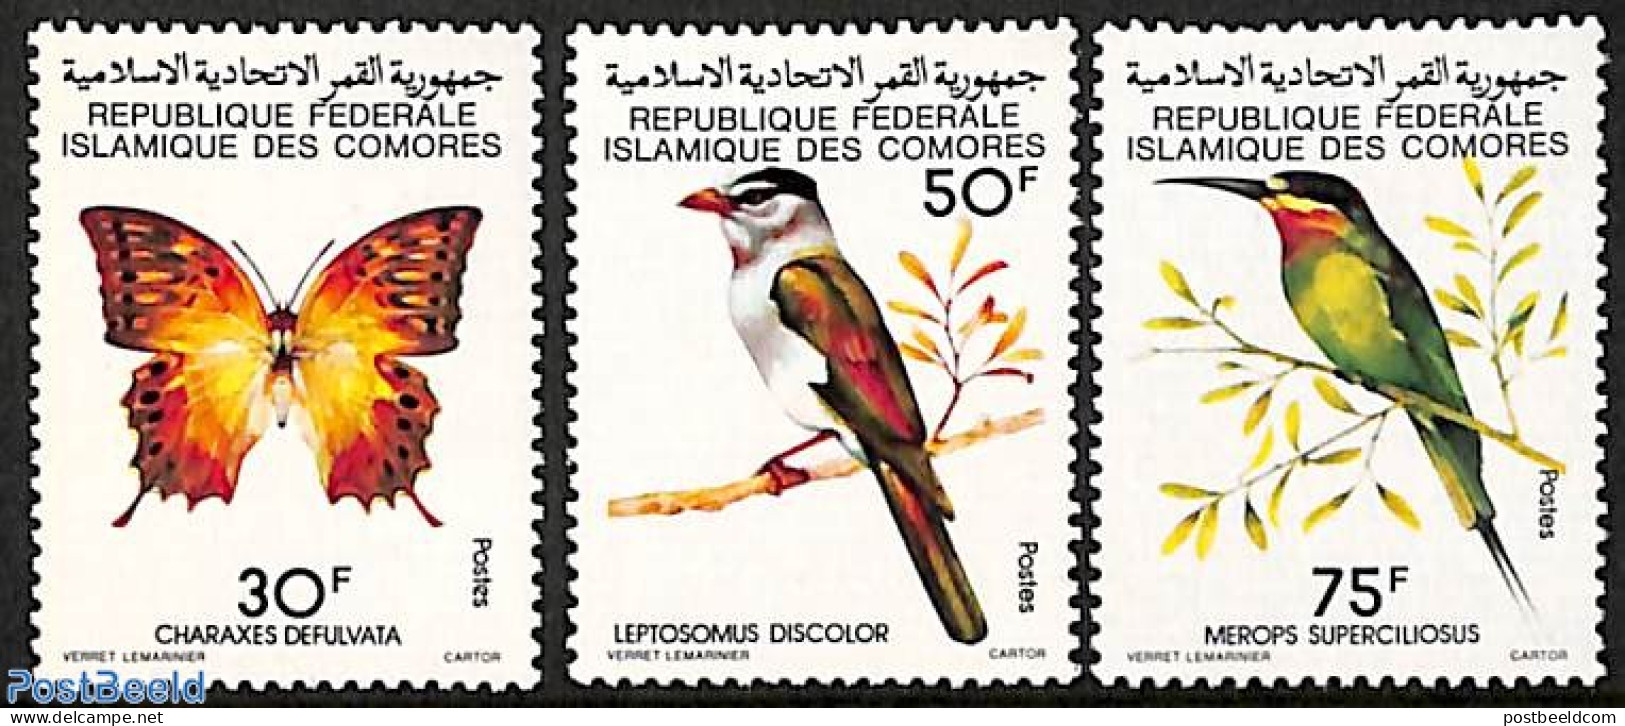 Comoros 1979 Birds, Butterflies 3v, Mint NH, Nature - Birds - Butterflies - Comoros